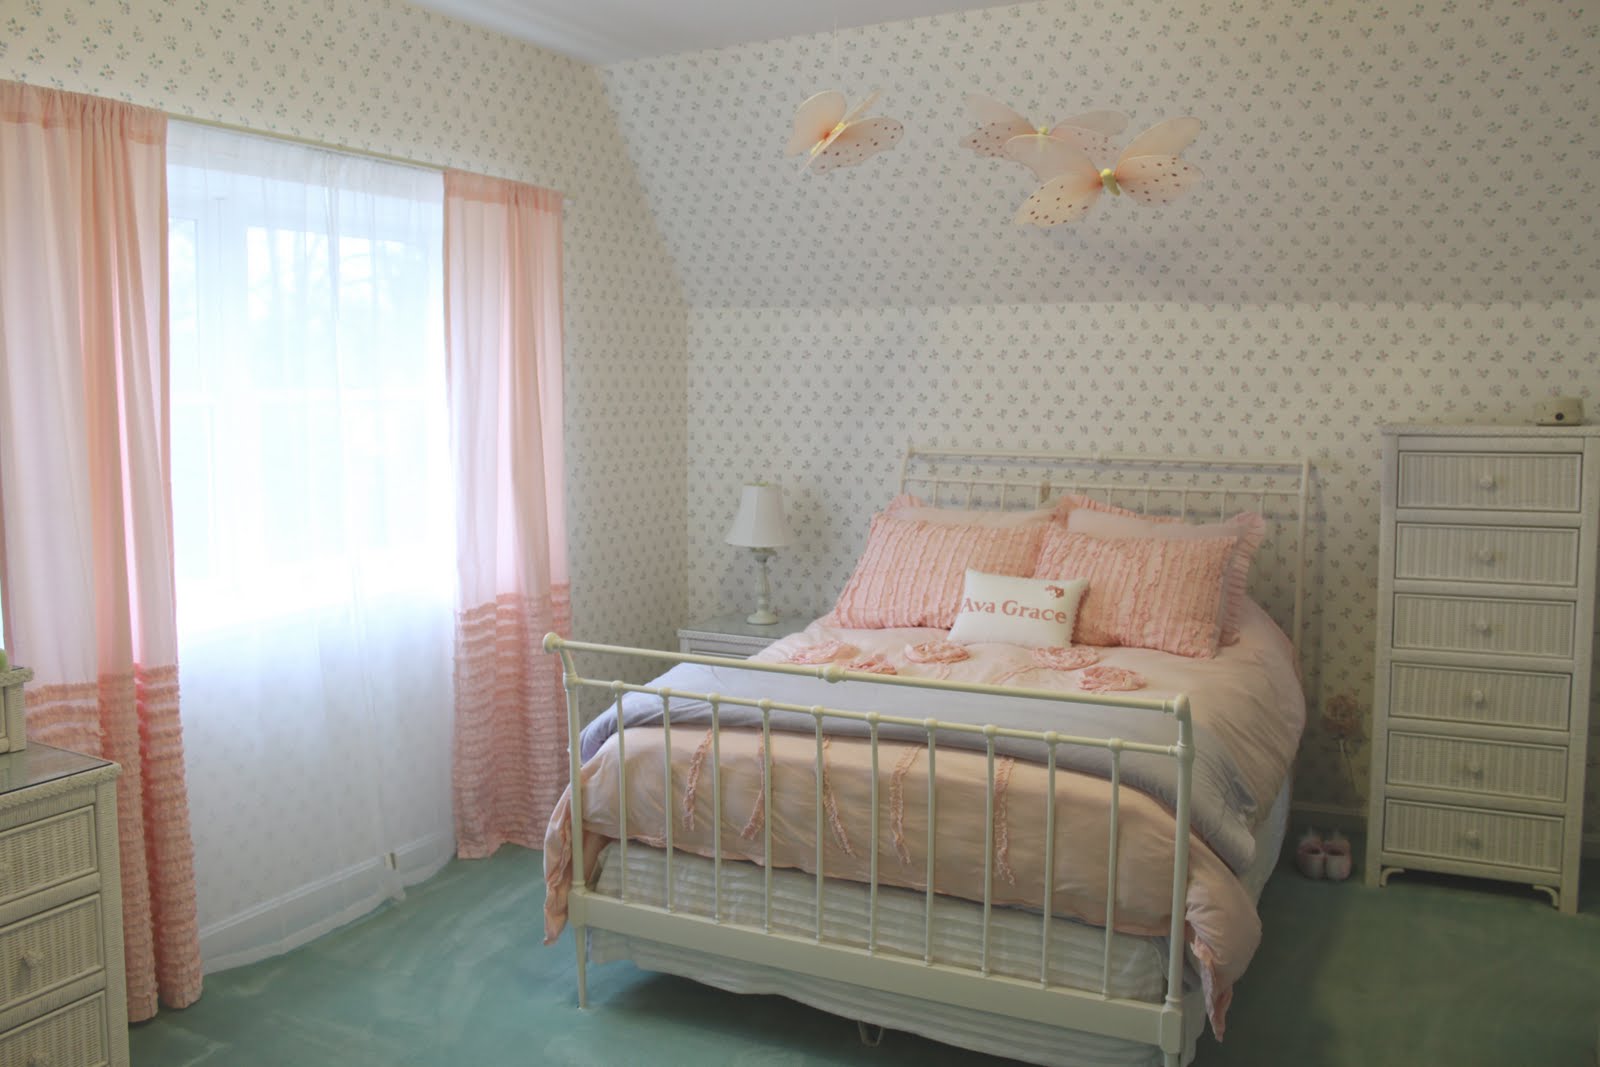 Butterfly Bedroom Wallpaper